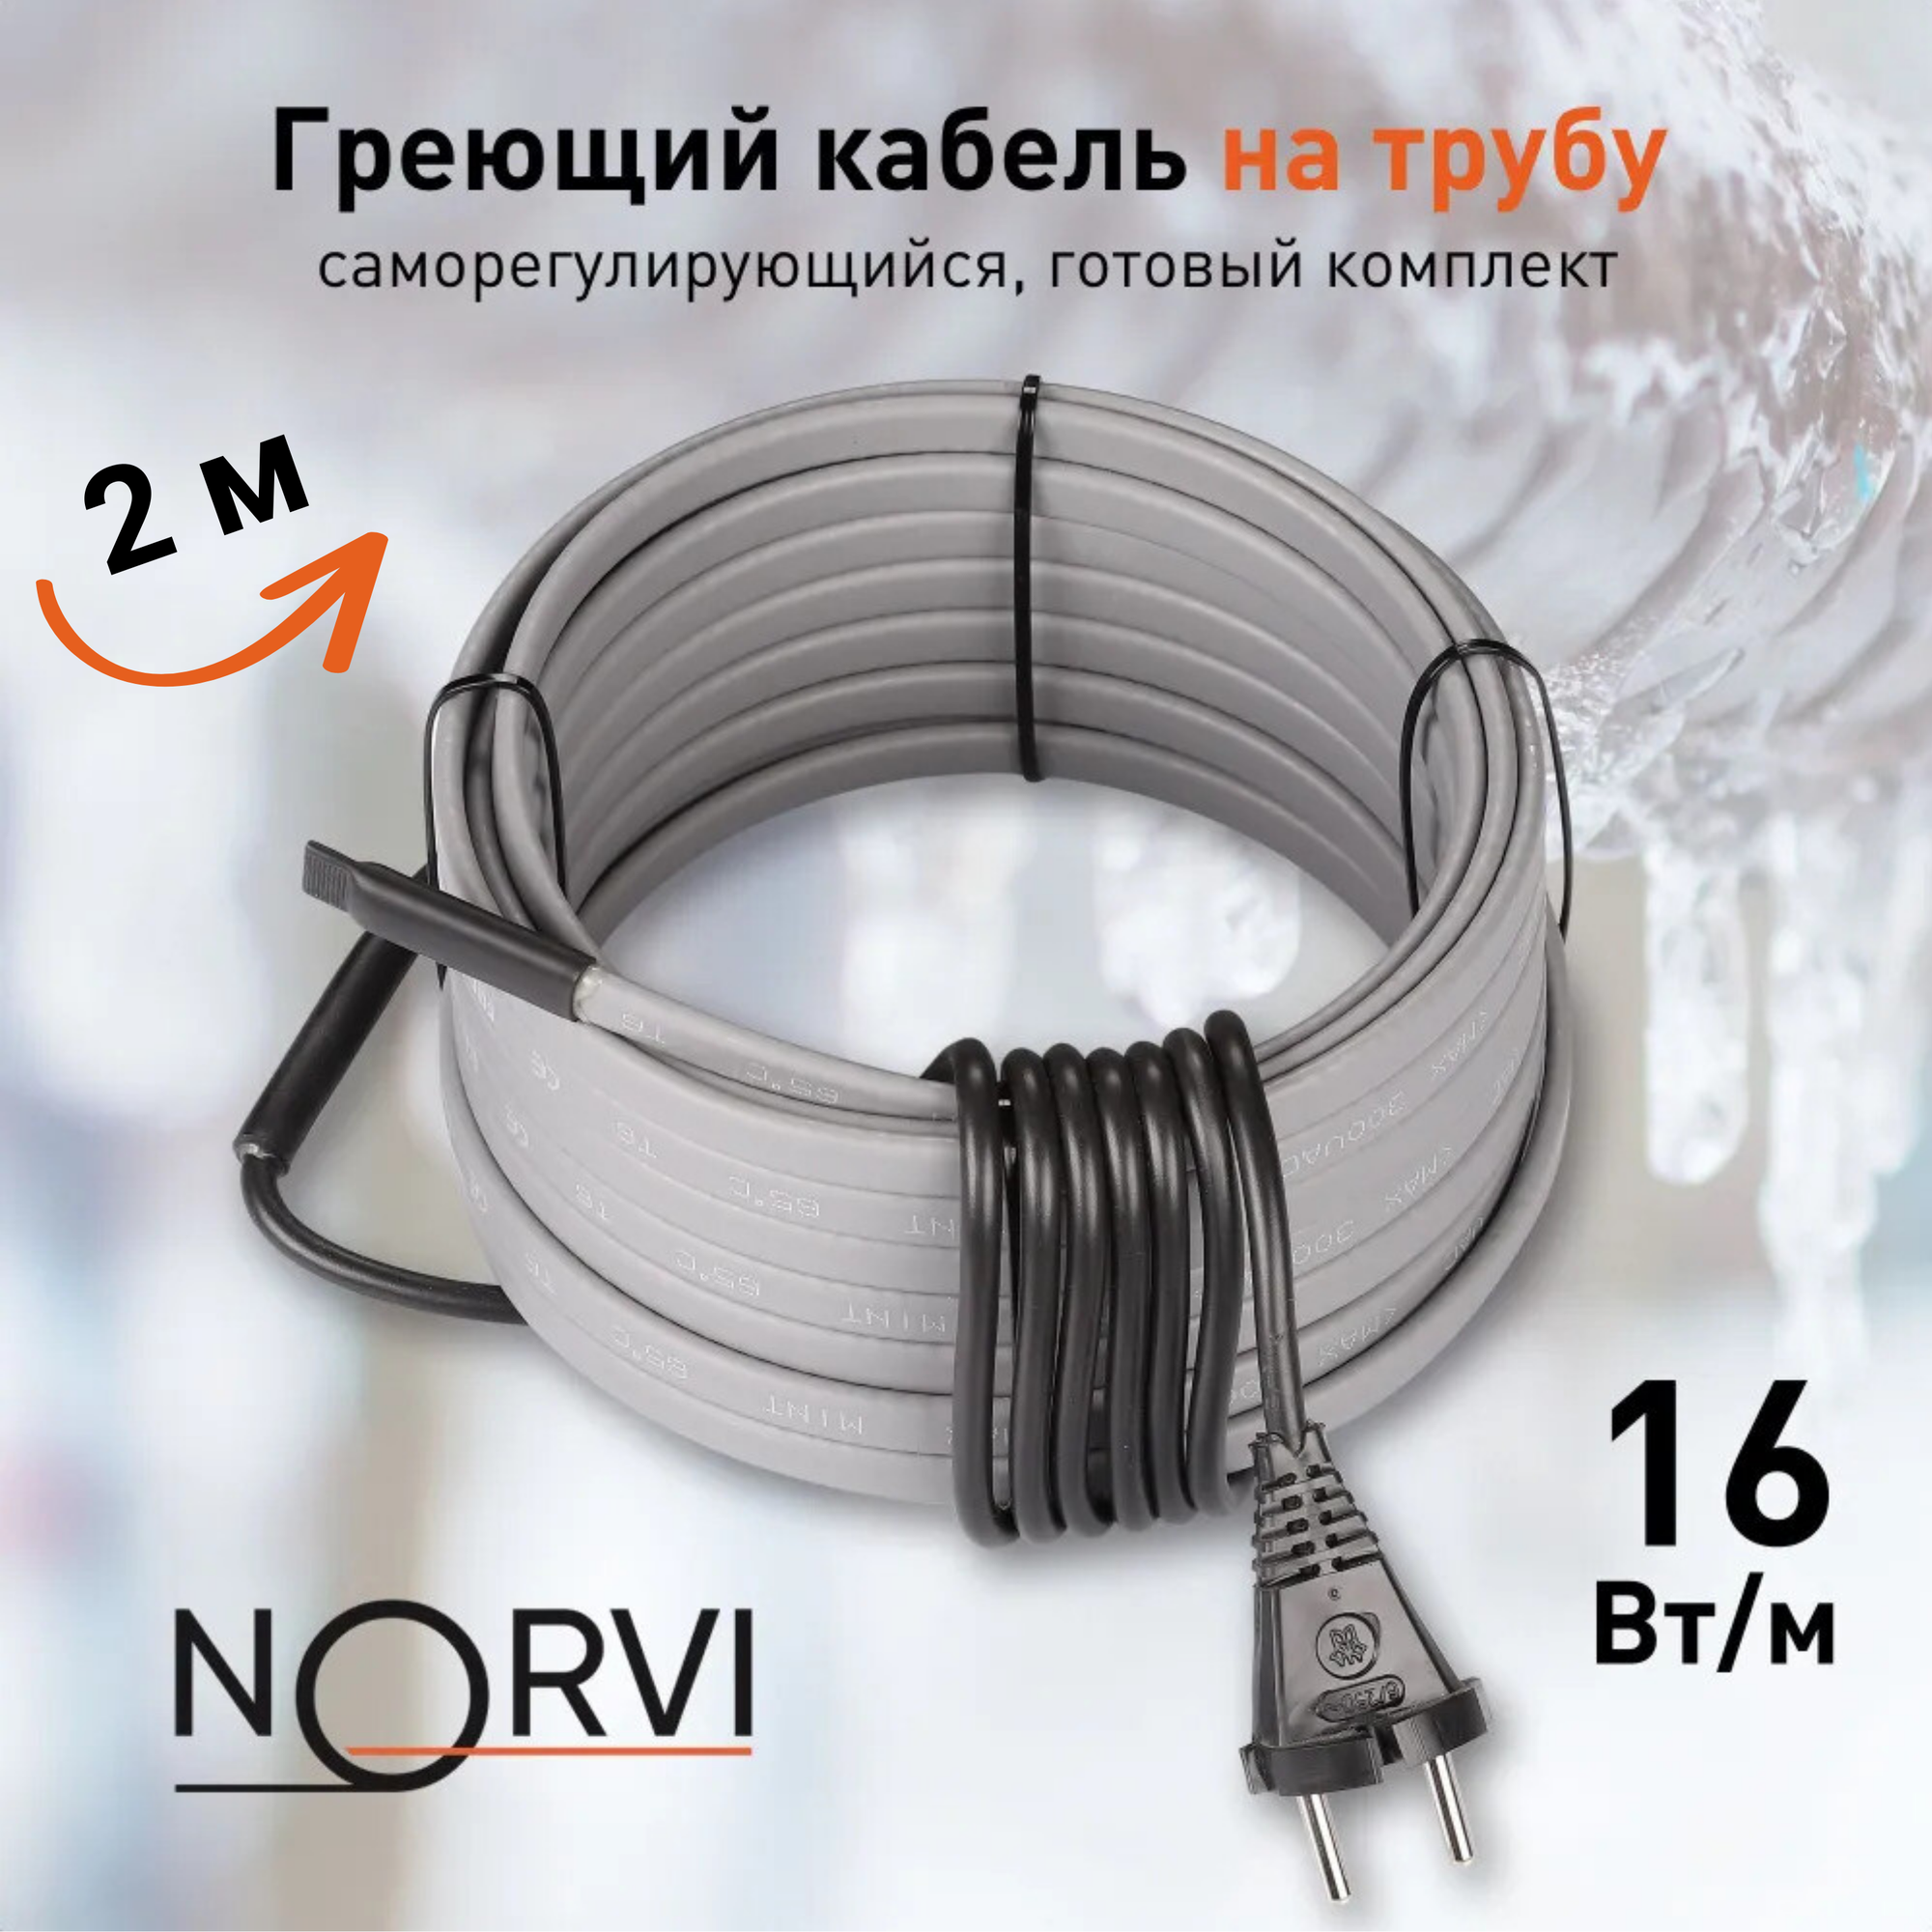 Греющий кабель NORVI ONPIPE, 32 Вт, 2 м, для обогрева труб снаружи